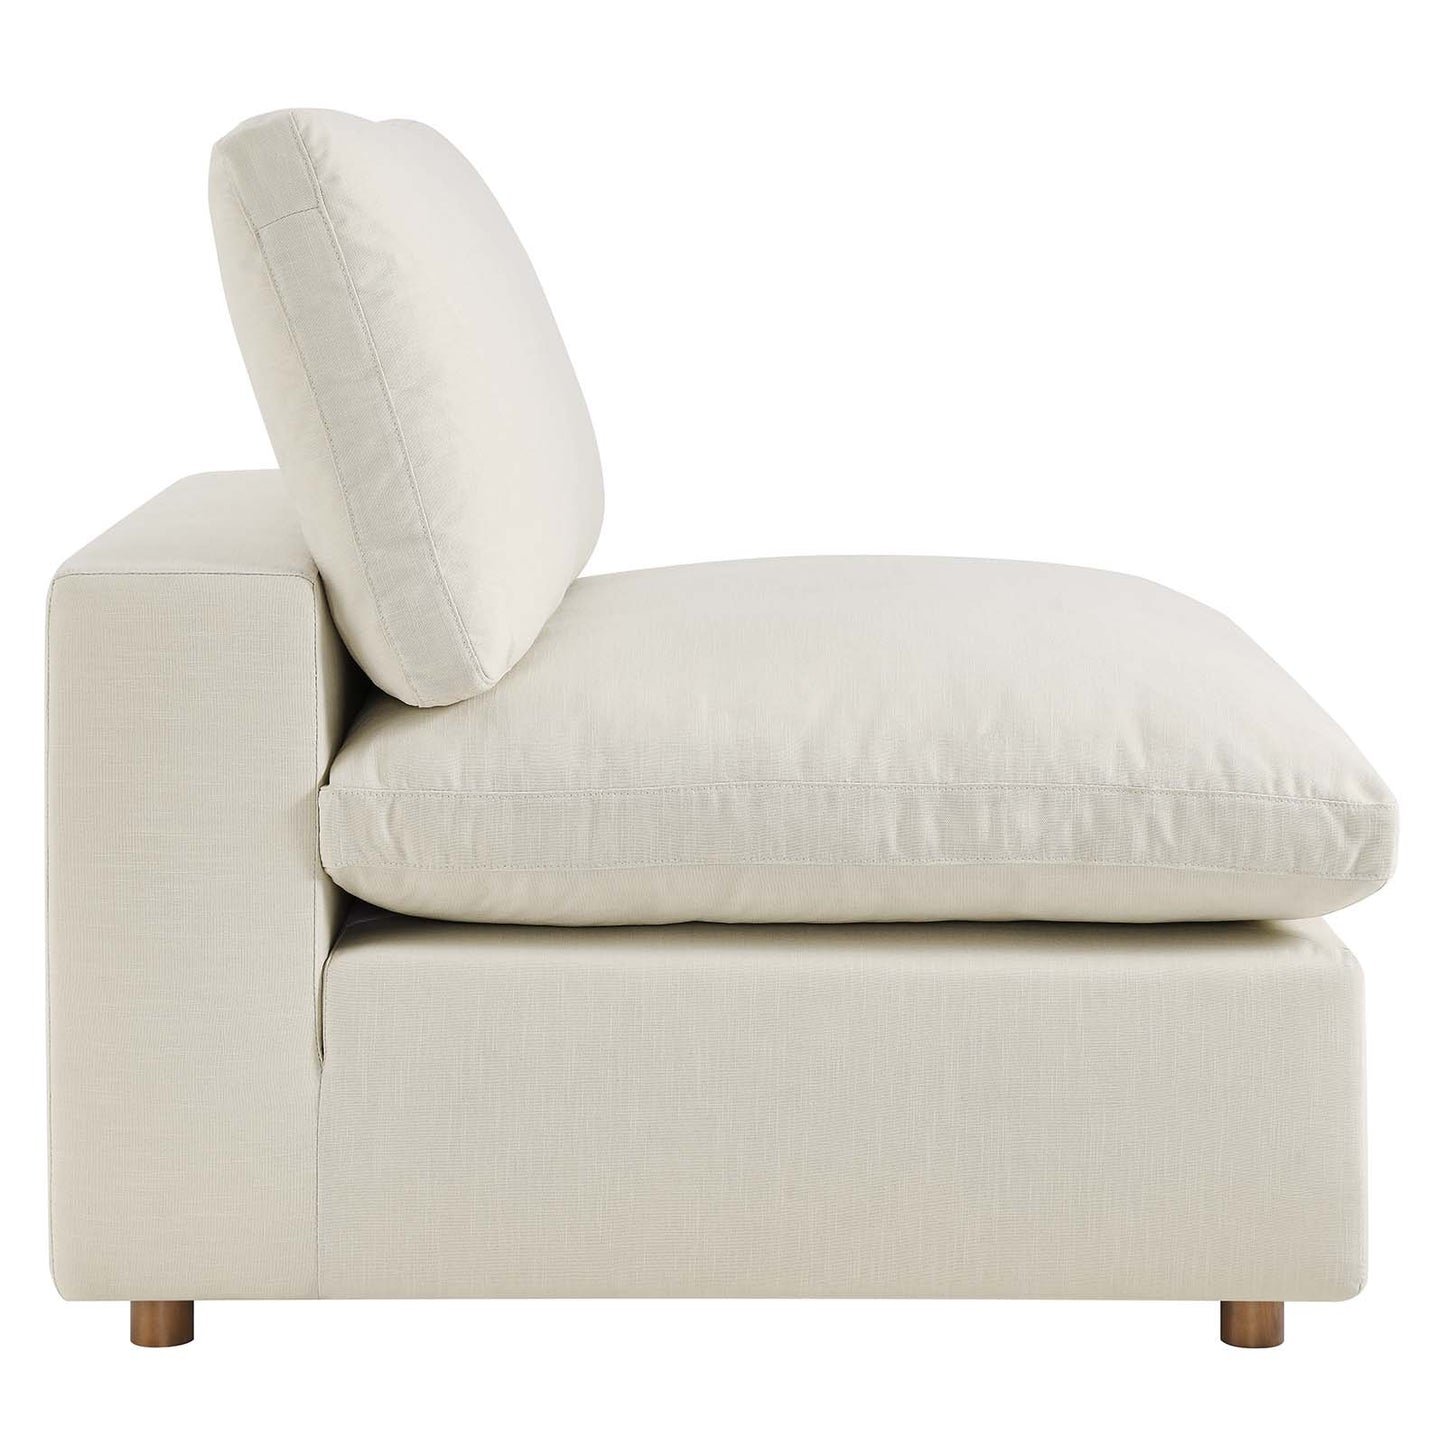 Commix Down Filled Overstuffed 3 Piece Sectional Sofa Set Light Beige EEI-3355-LBG